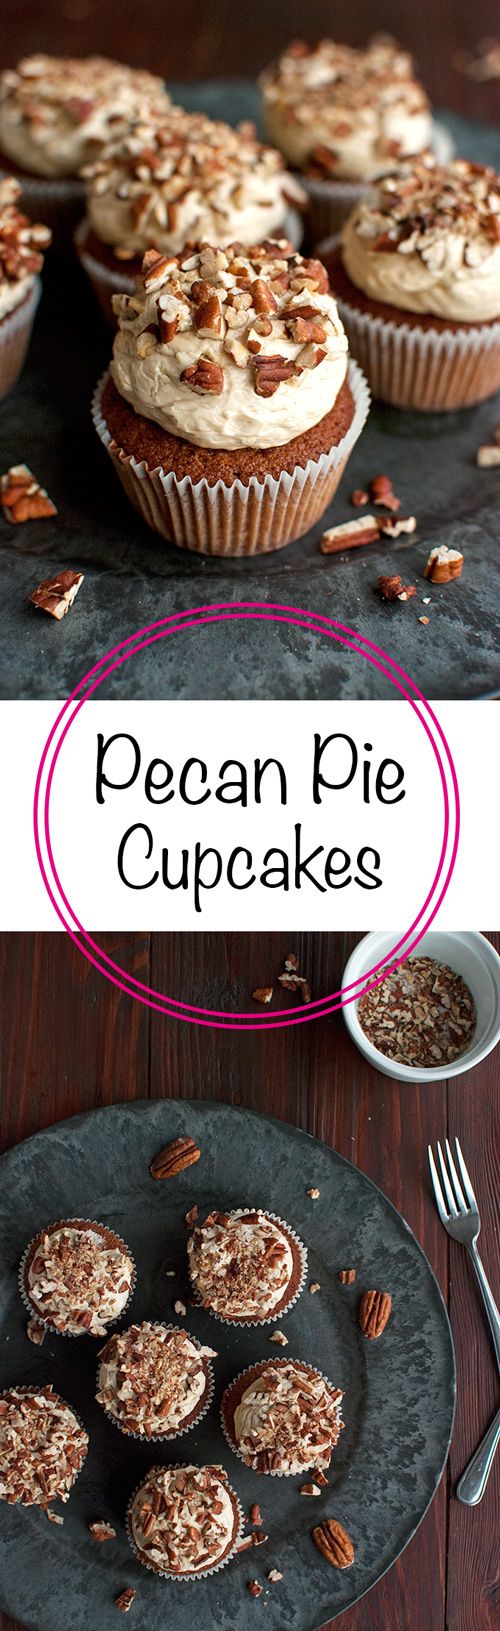 Pecan Pie Cupcakes